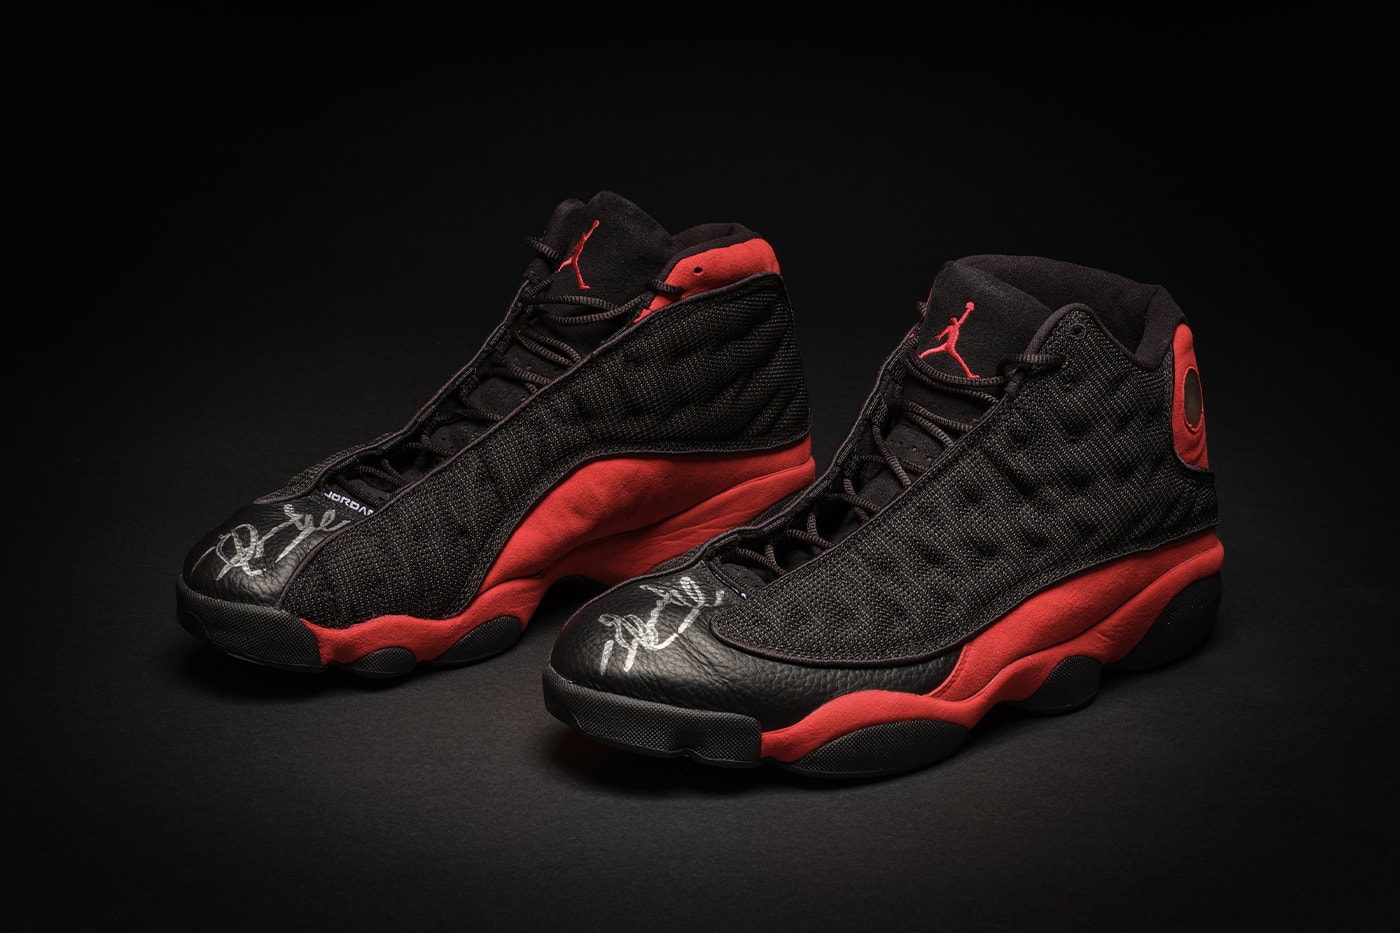 Game-Worn Michael Jordan Nike AJ1 Sneakers Hit Auction Block